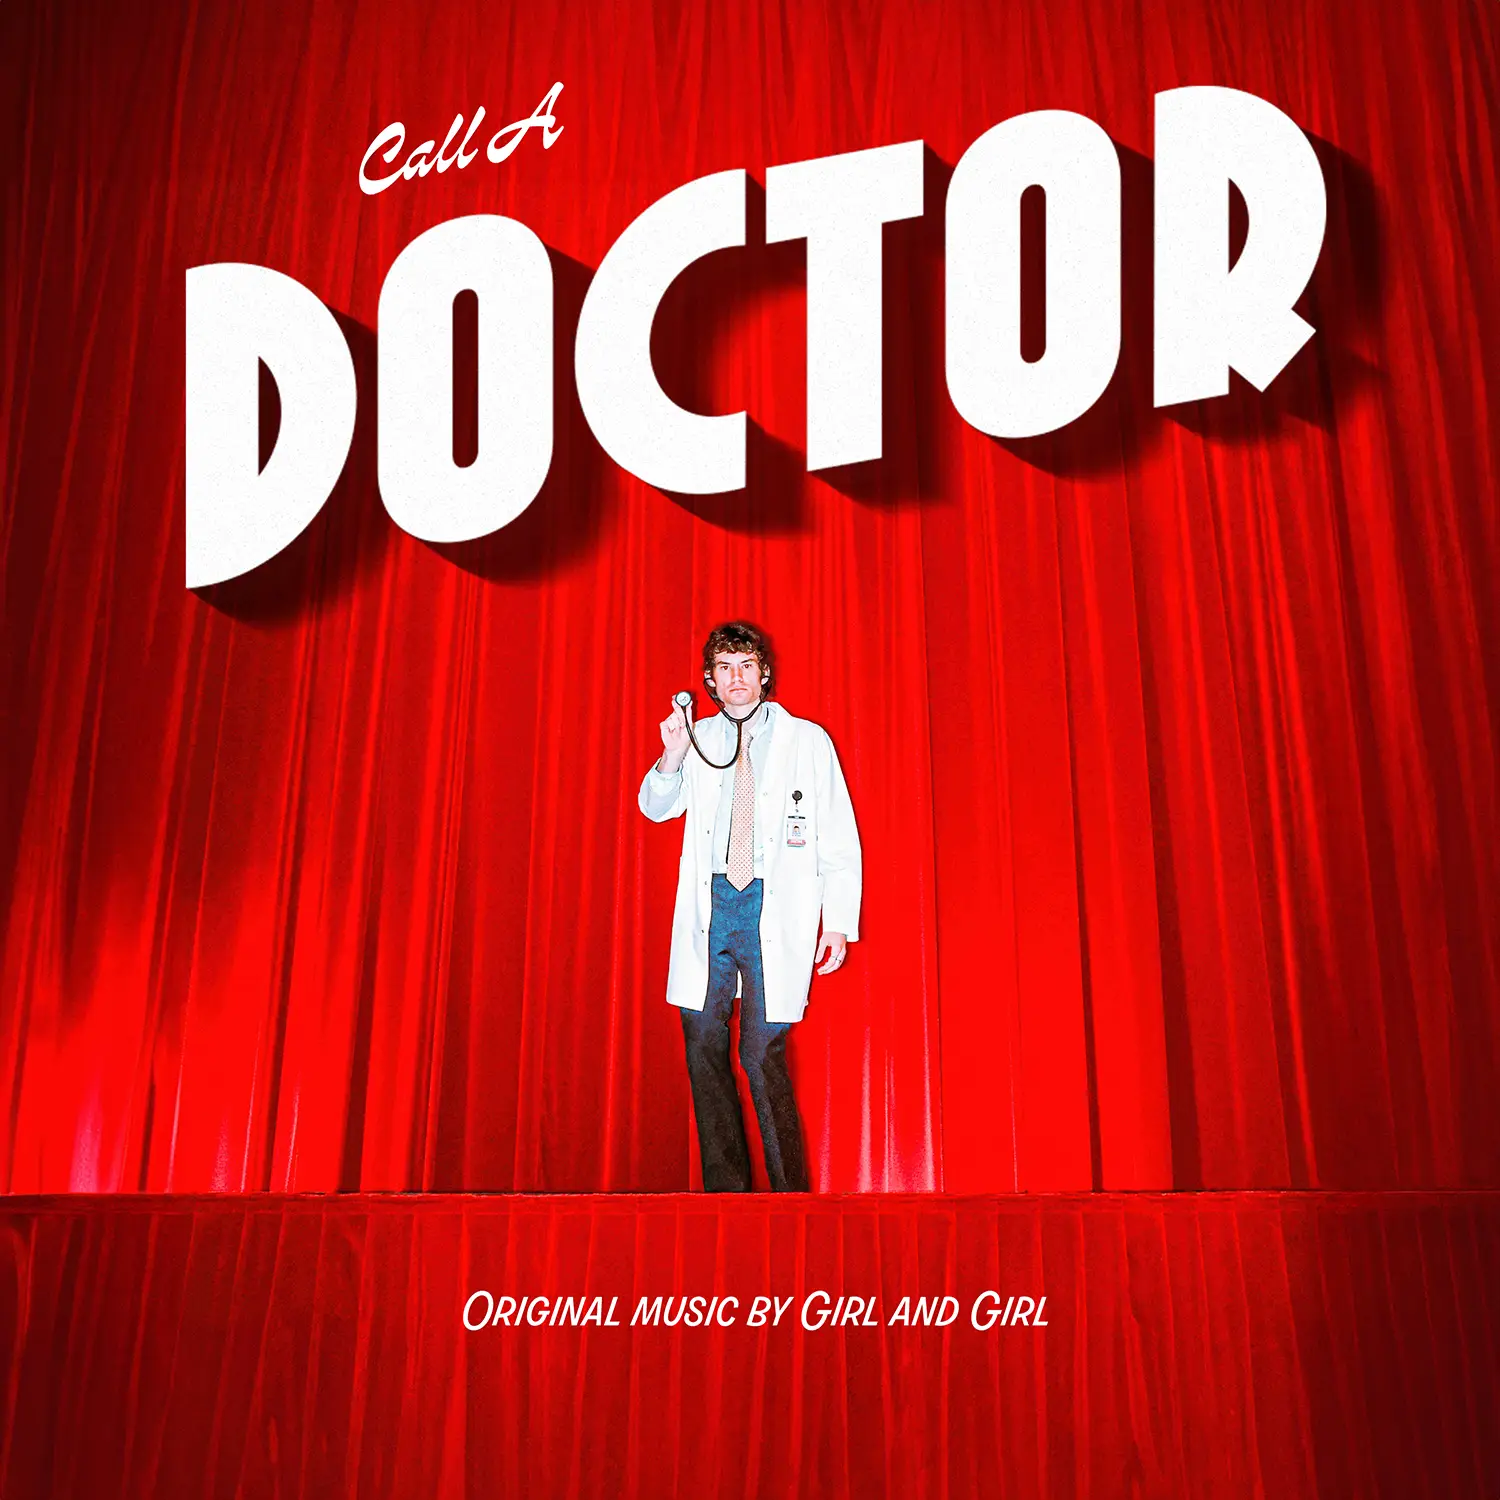 Girl and Girl - Call A Doctor artwork